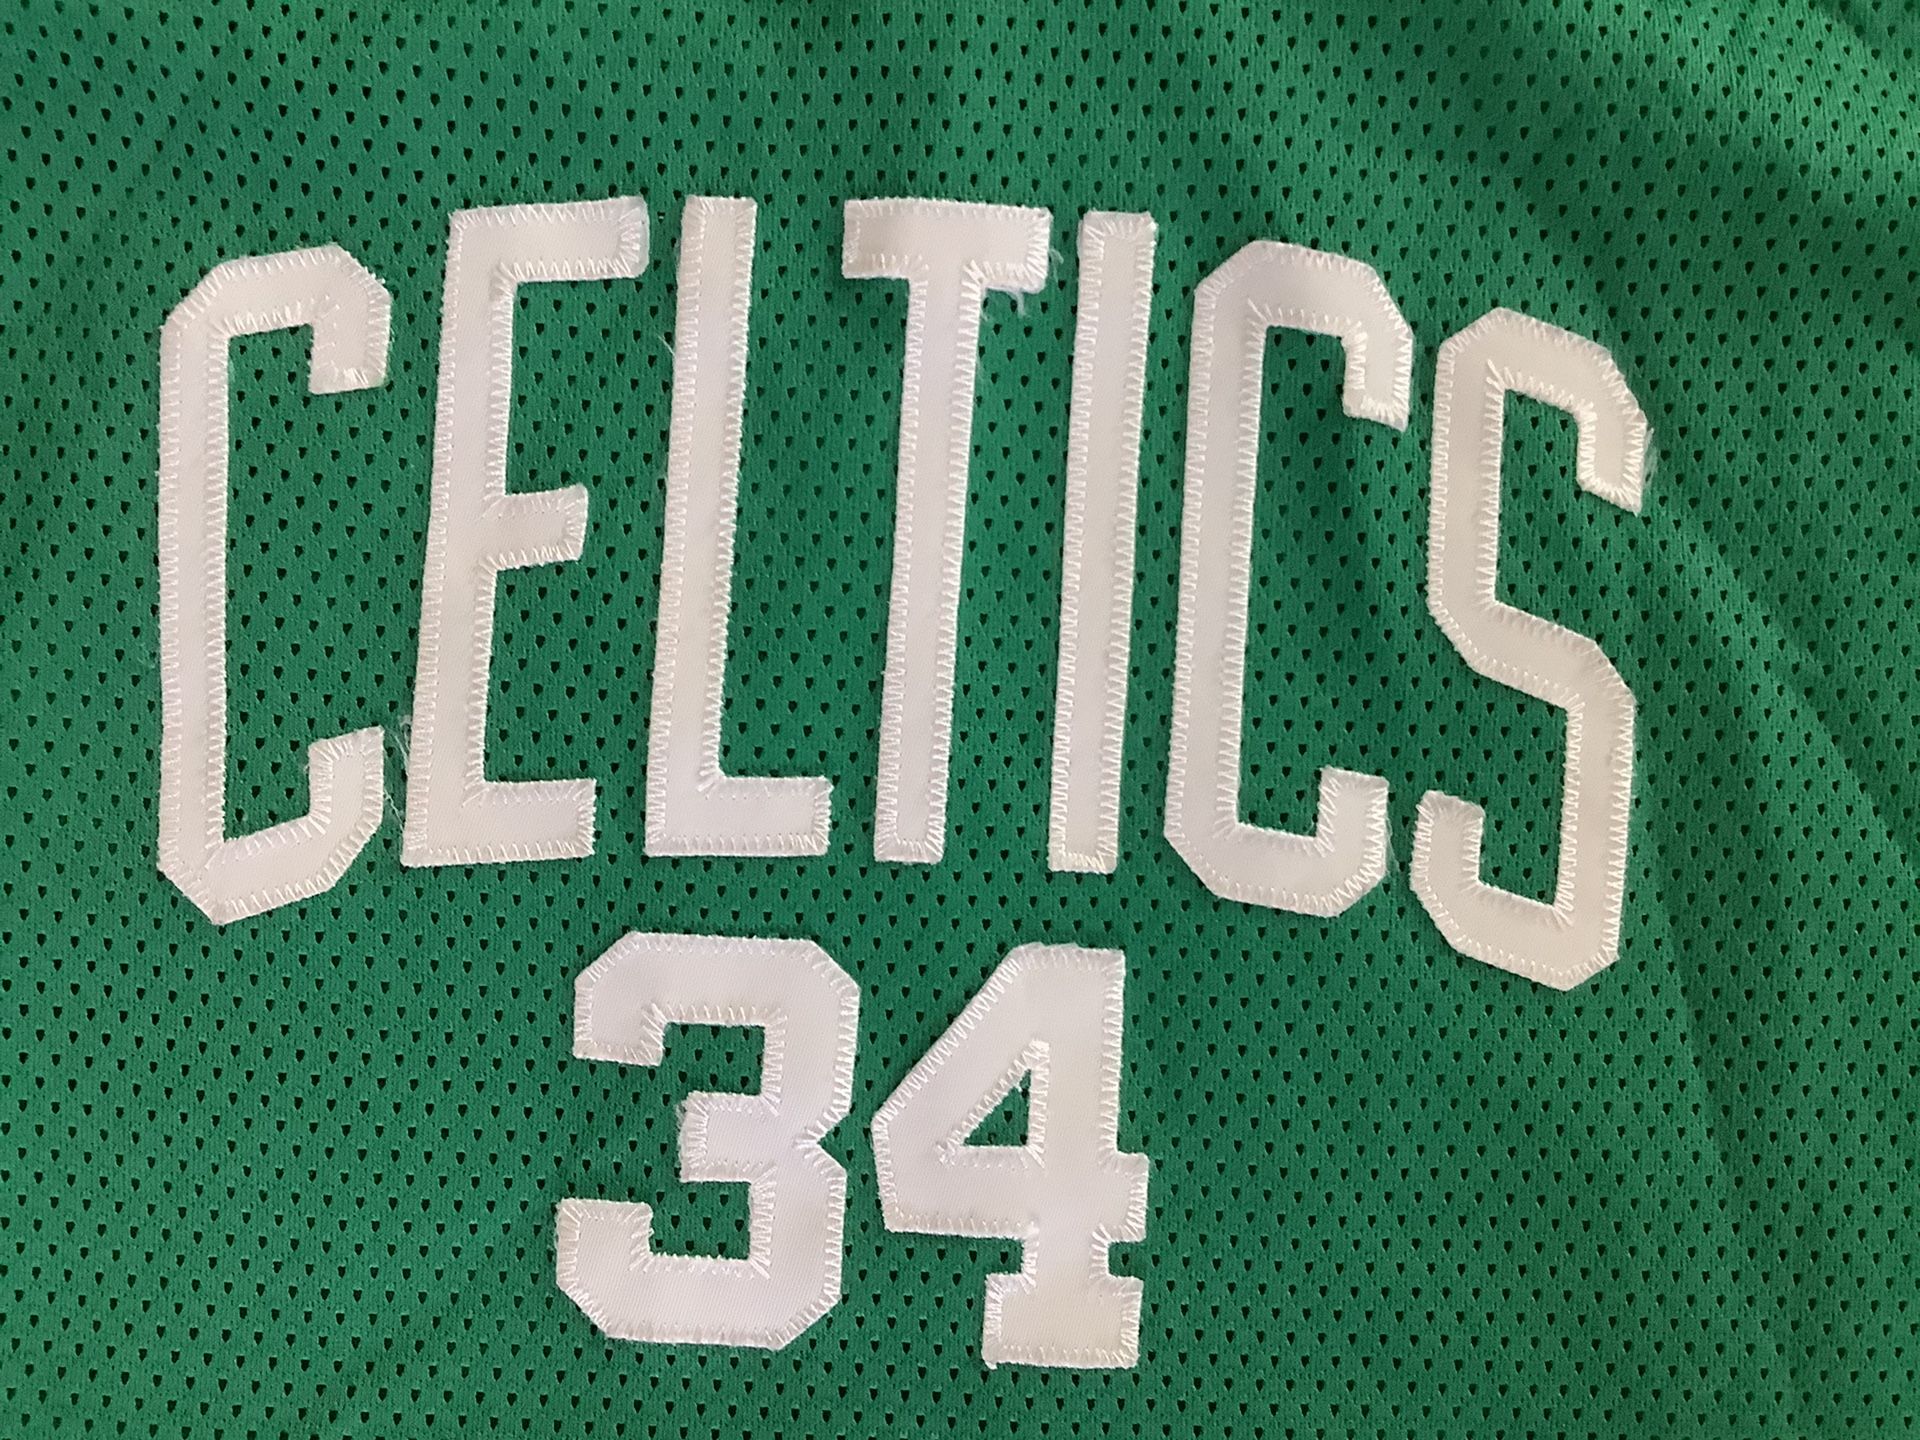 Vintage Reebok Celtics Jersey Dress #34 Stitched